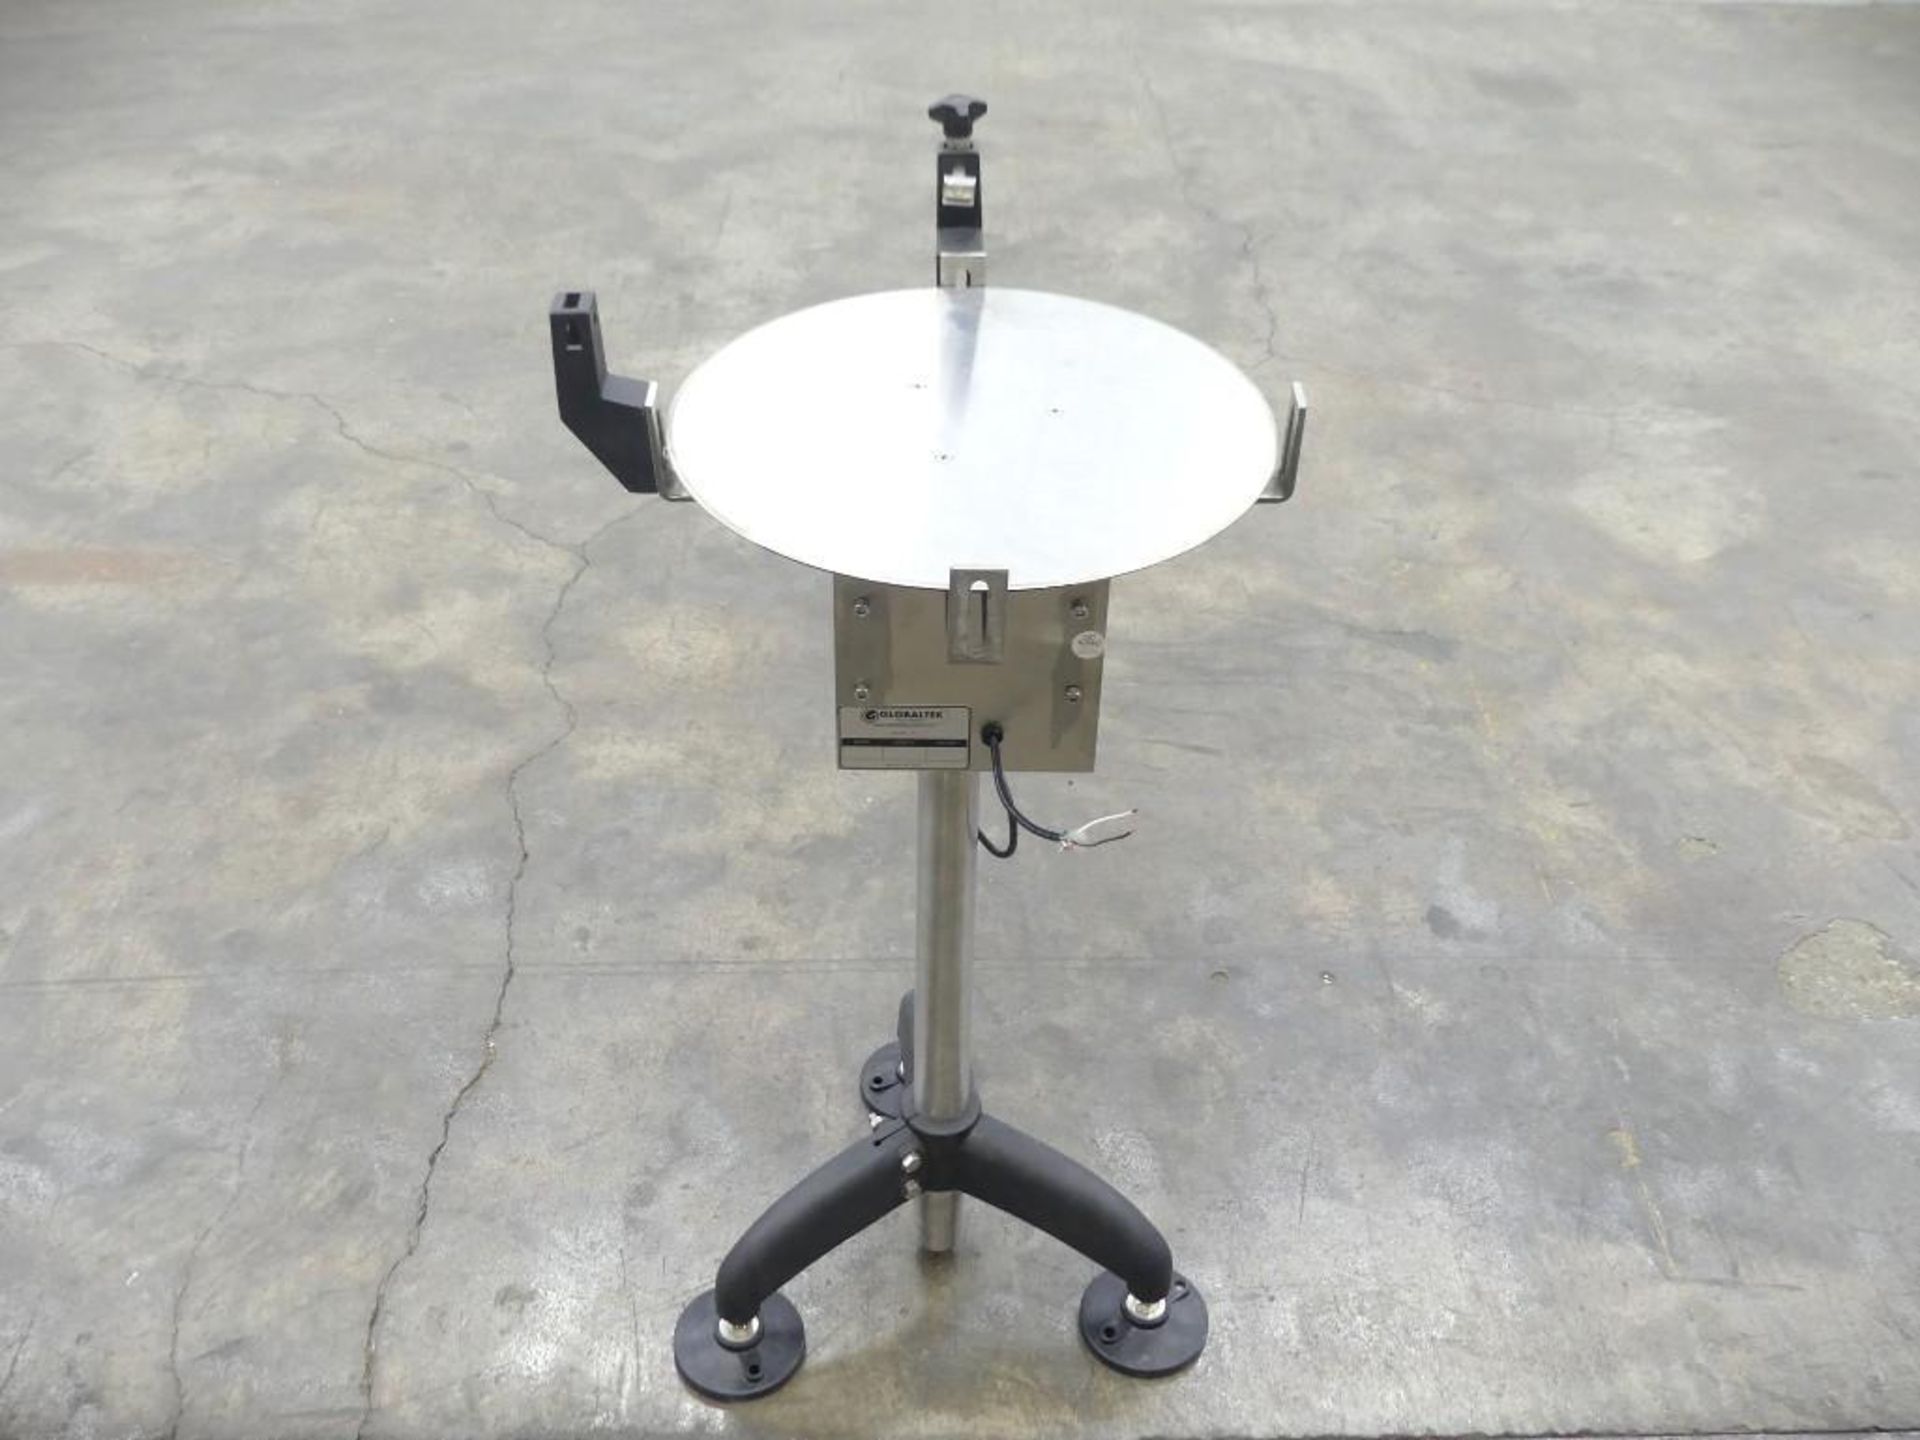 GlobalTek ROT-18 Stainless Steel 18 Inch Diameter Transfer Rotary Turn Table